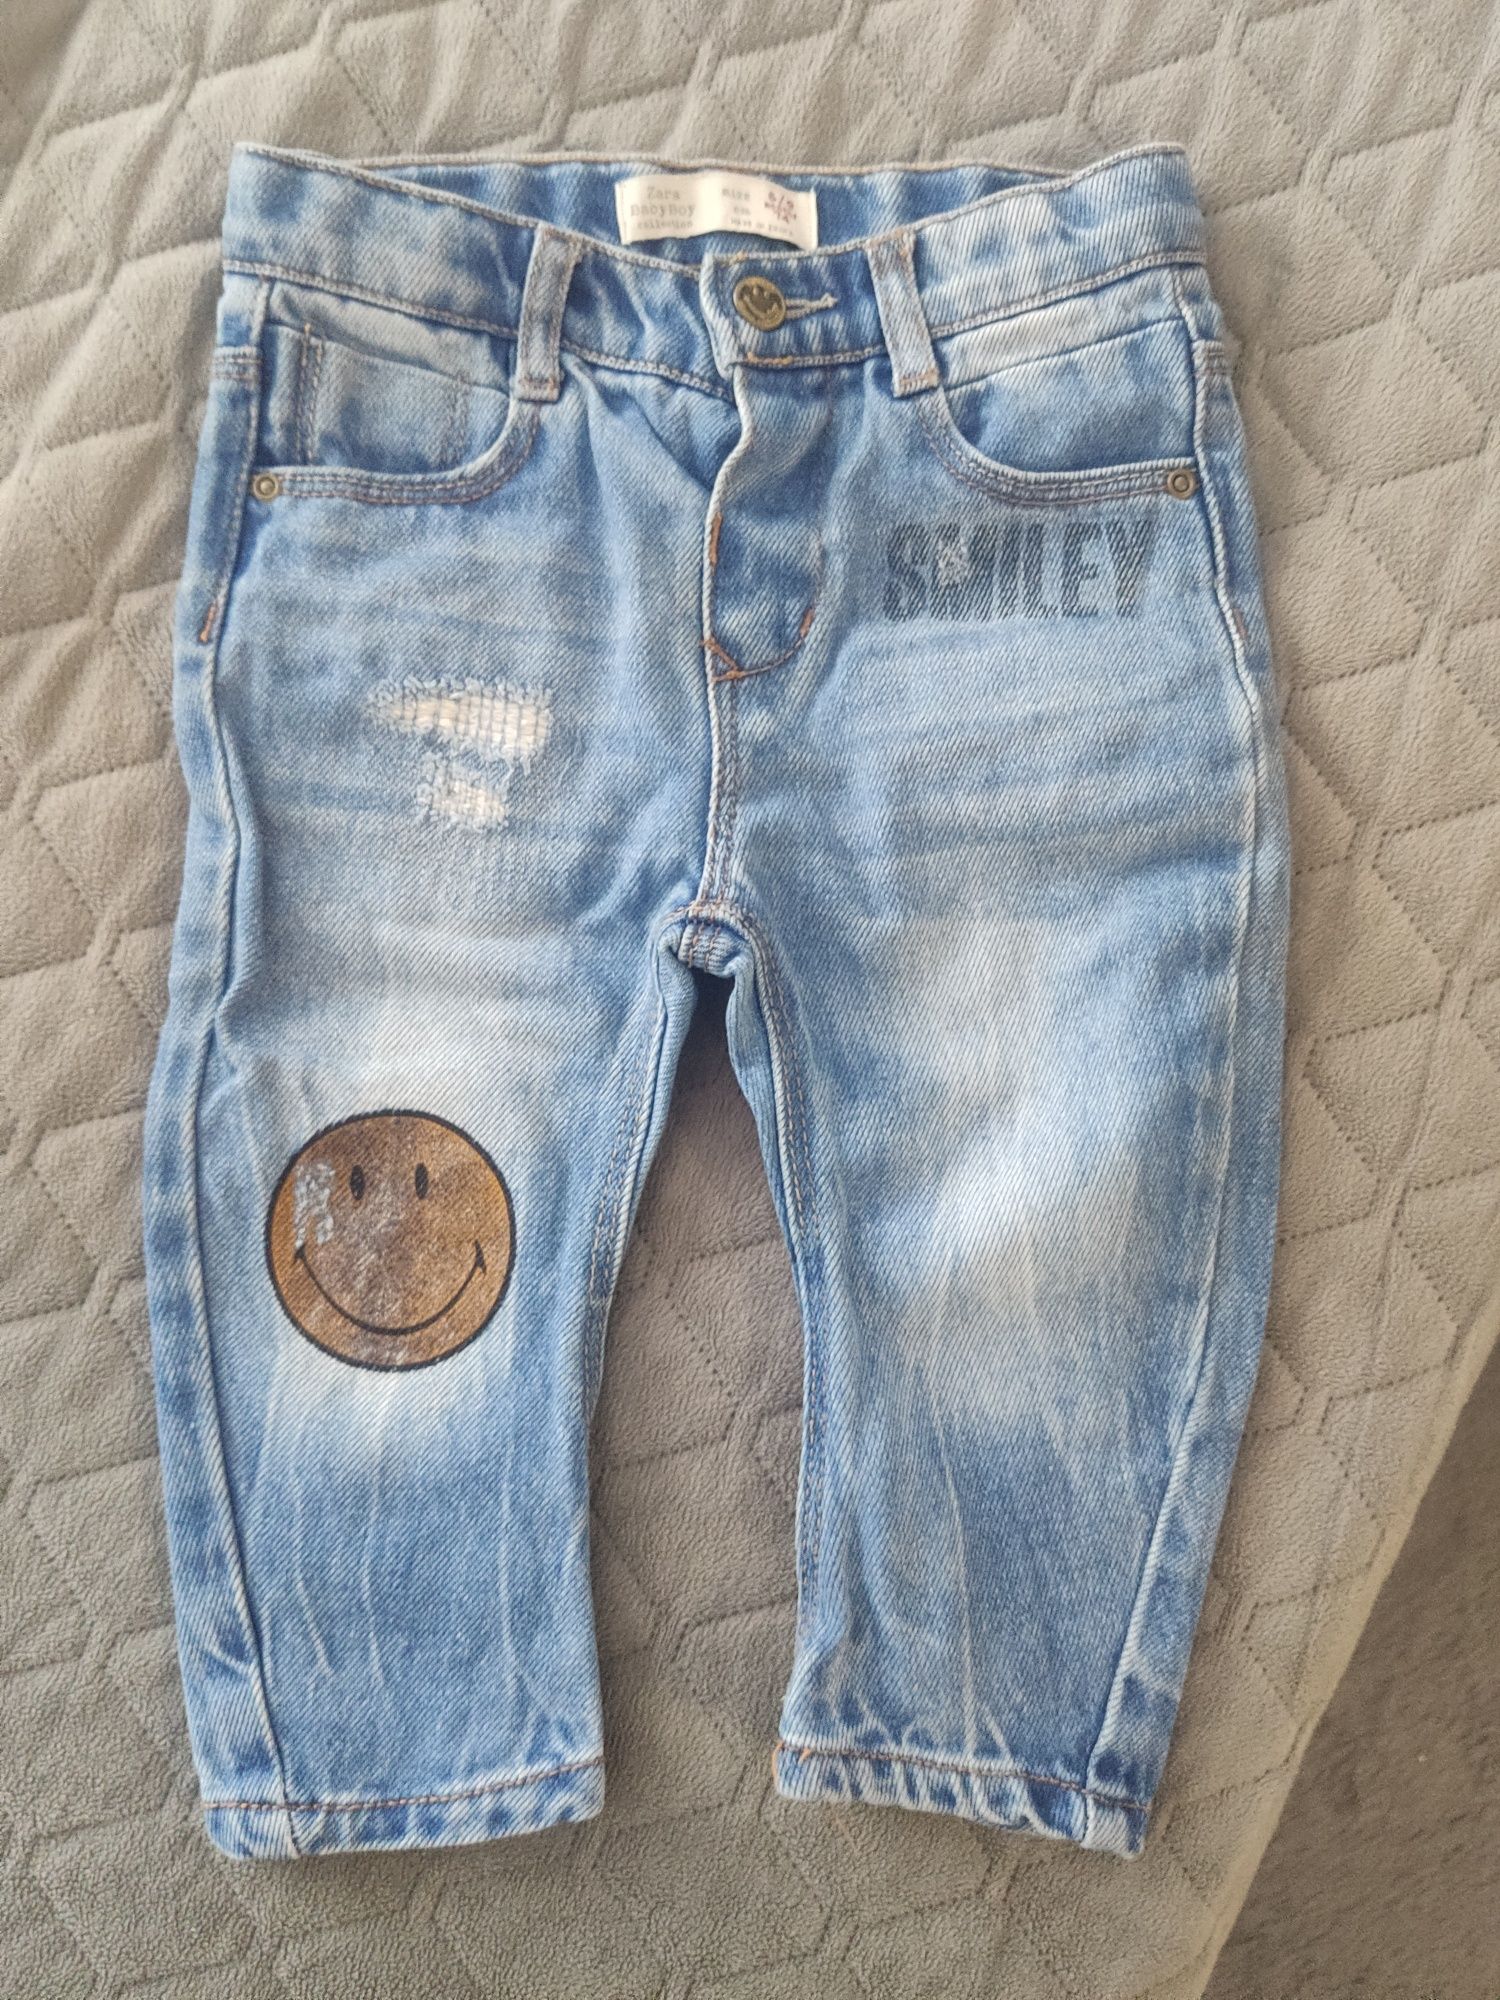 Spodnie jeans Zara chłopiec 74